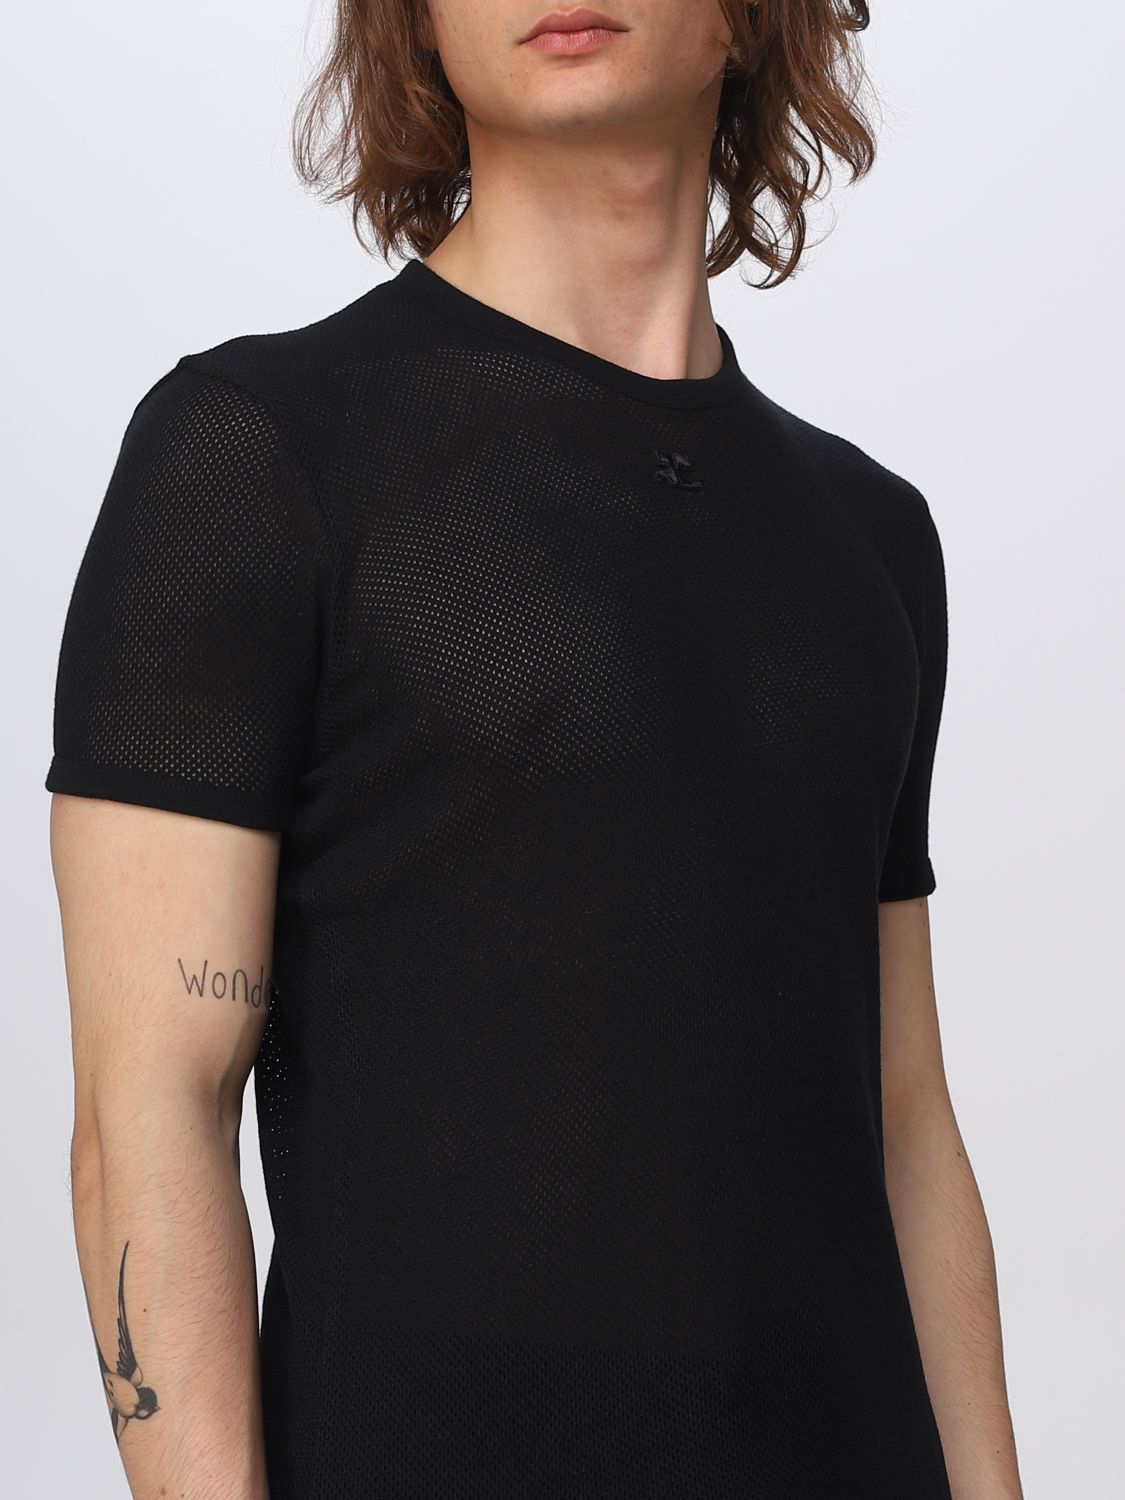 T-shirt Courrèges: T-shirt Courrèges homme noir 5